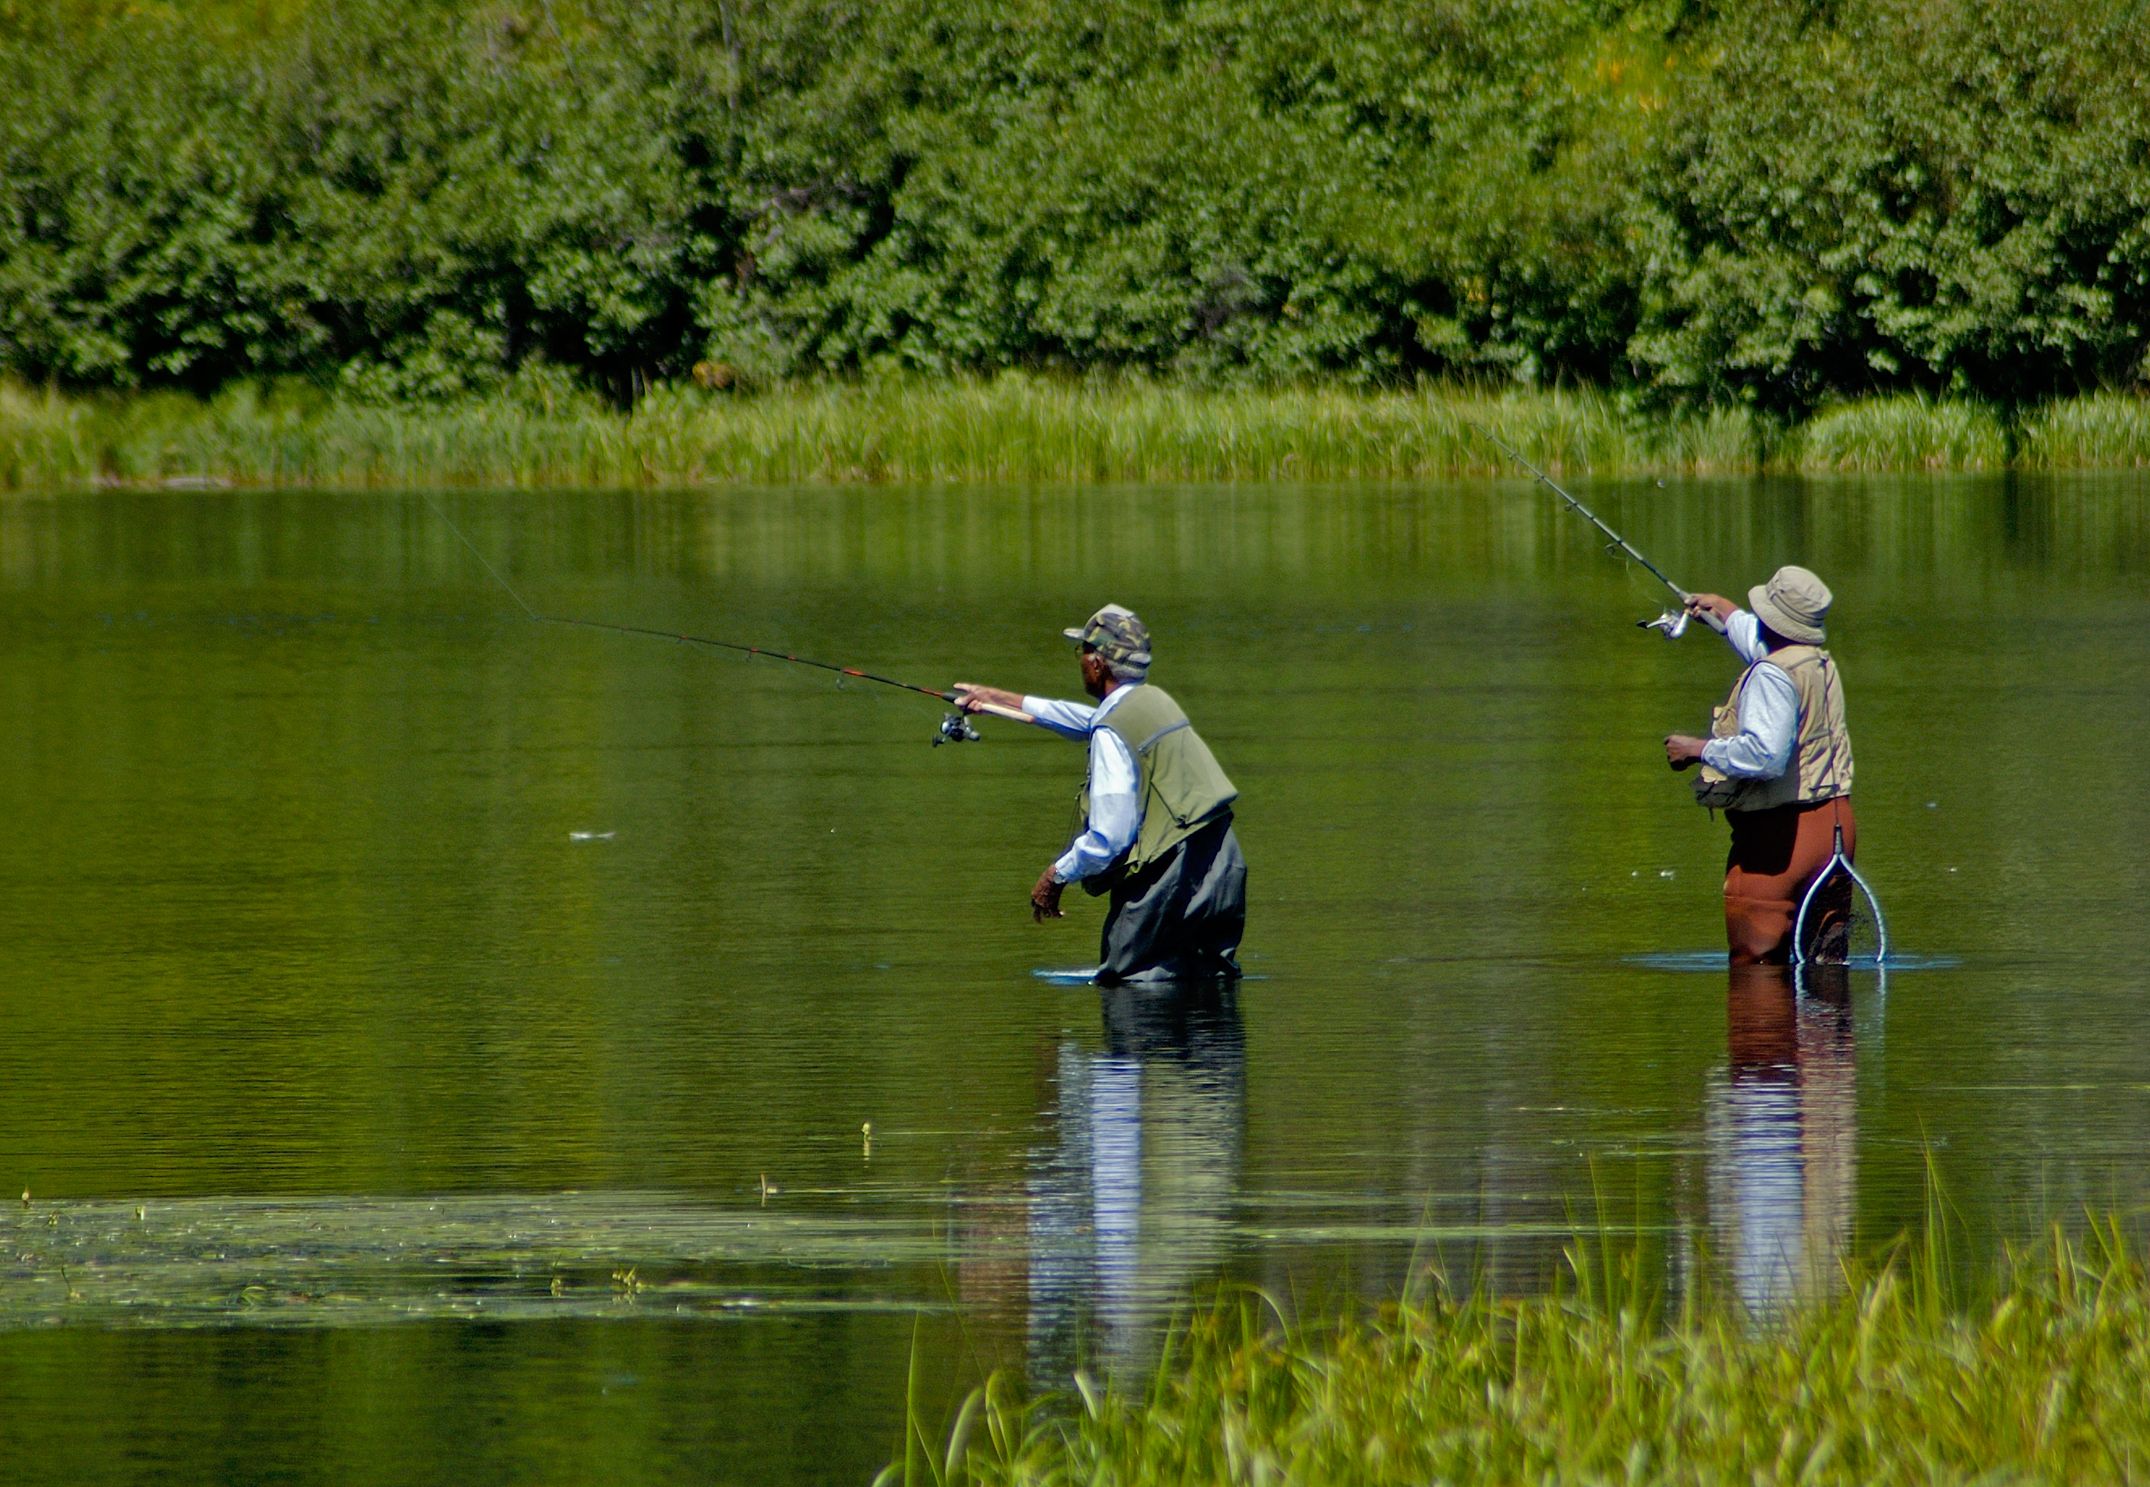 Qué requisitos necesitas cumplir para pescar en un río?